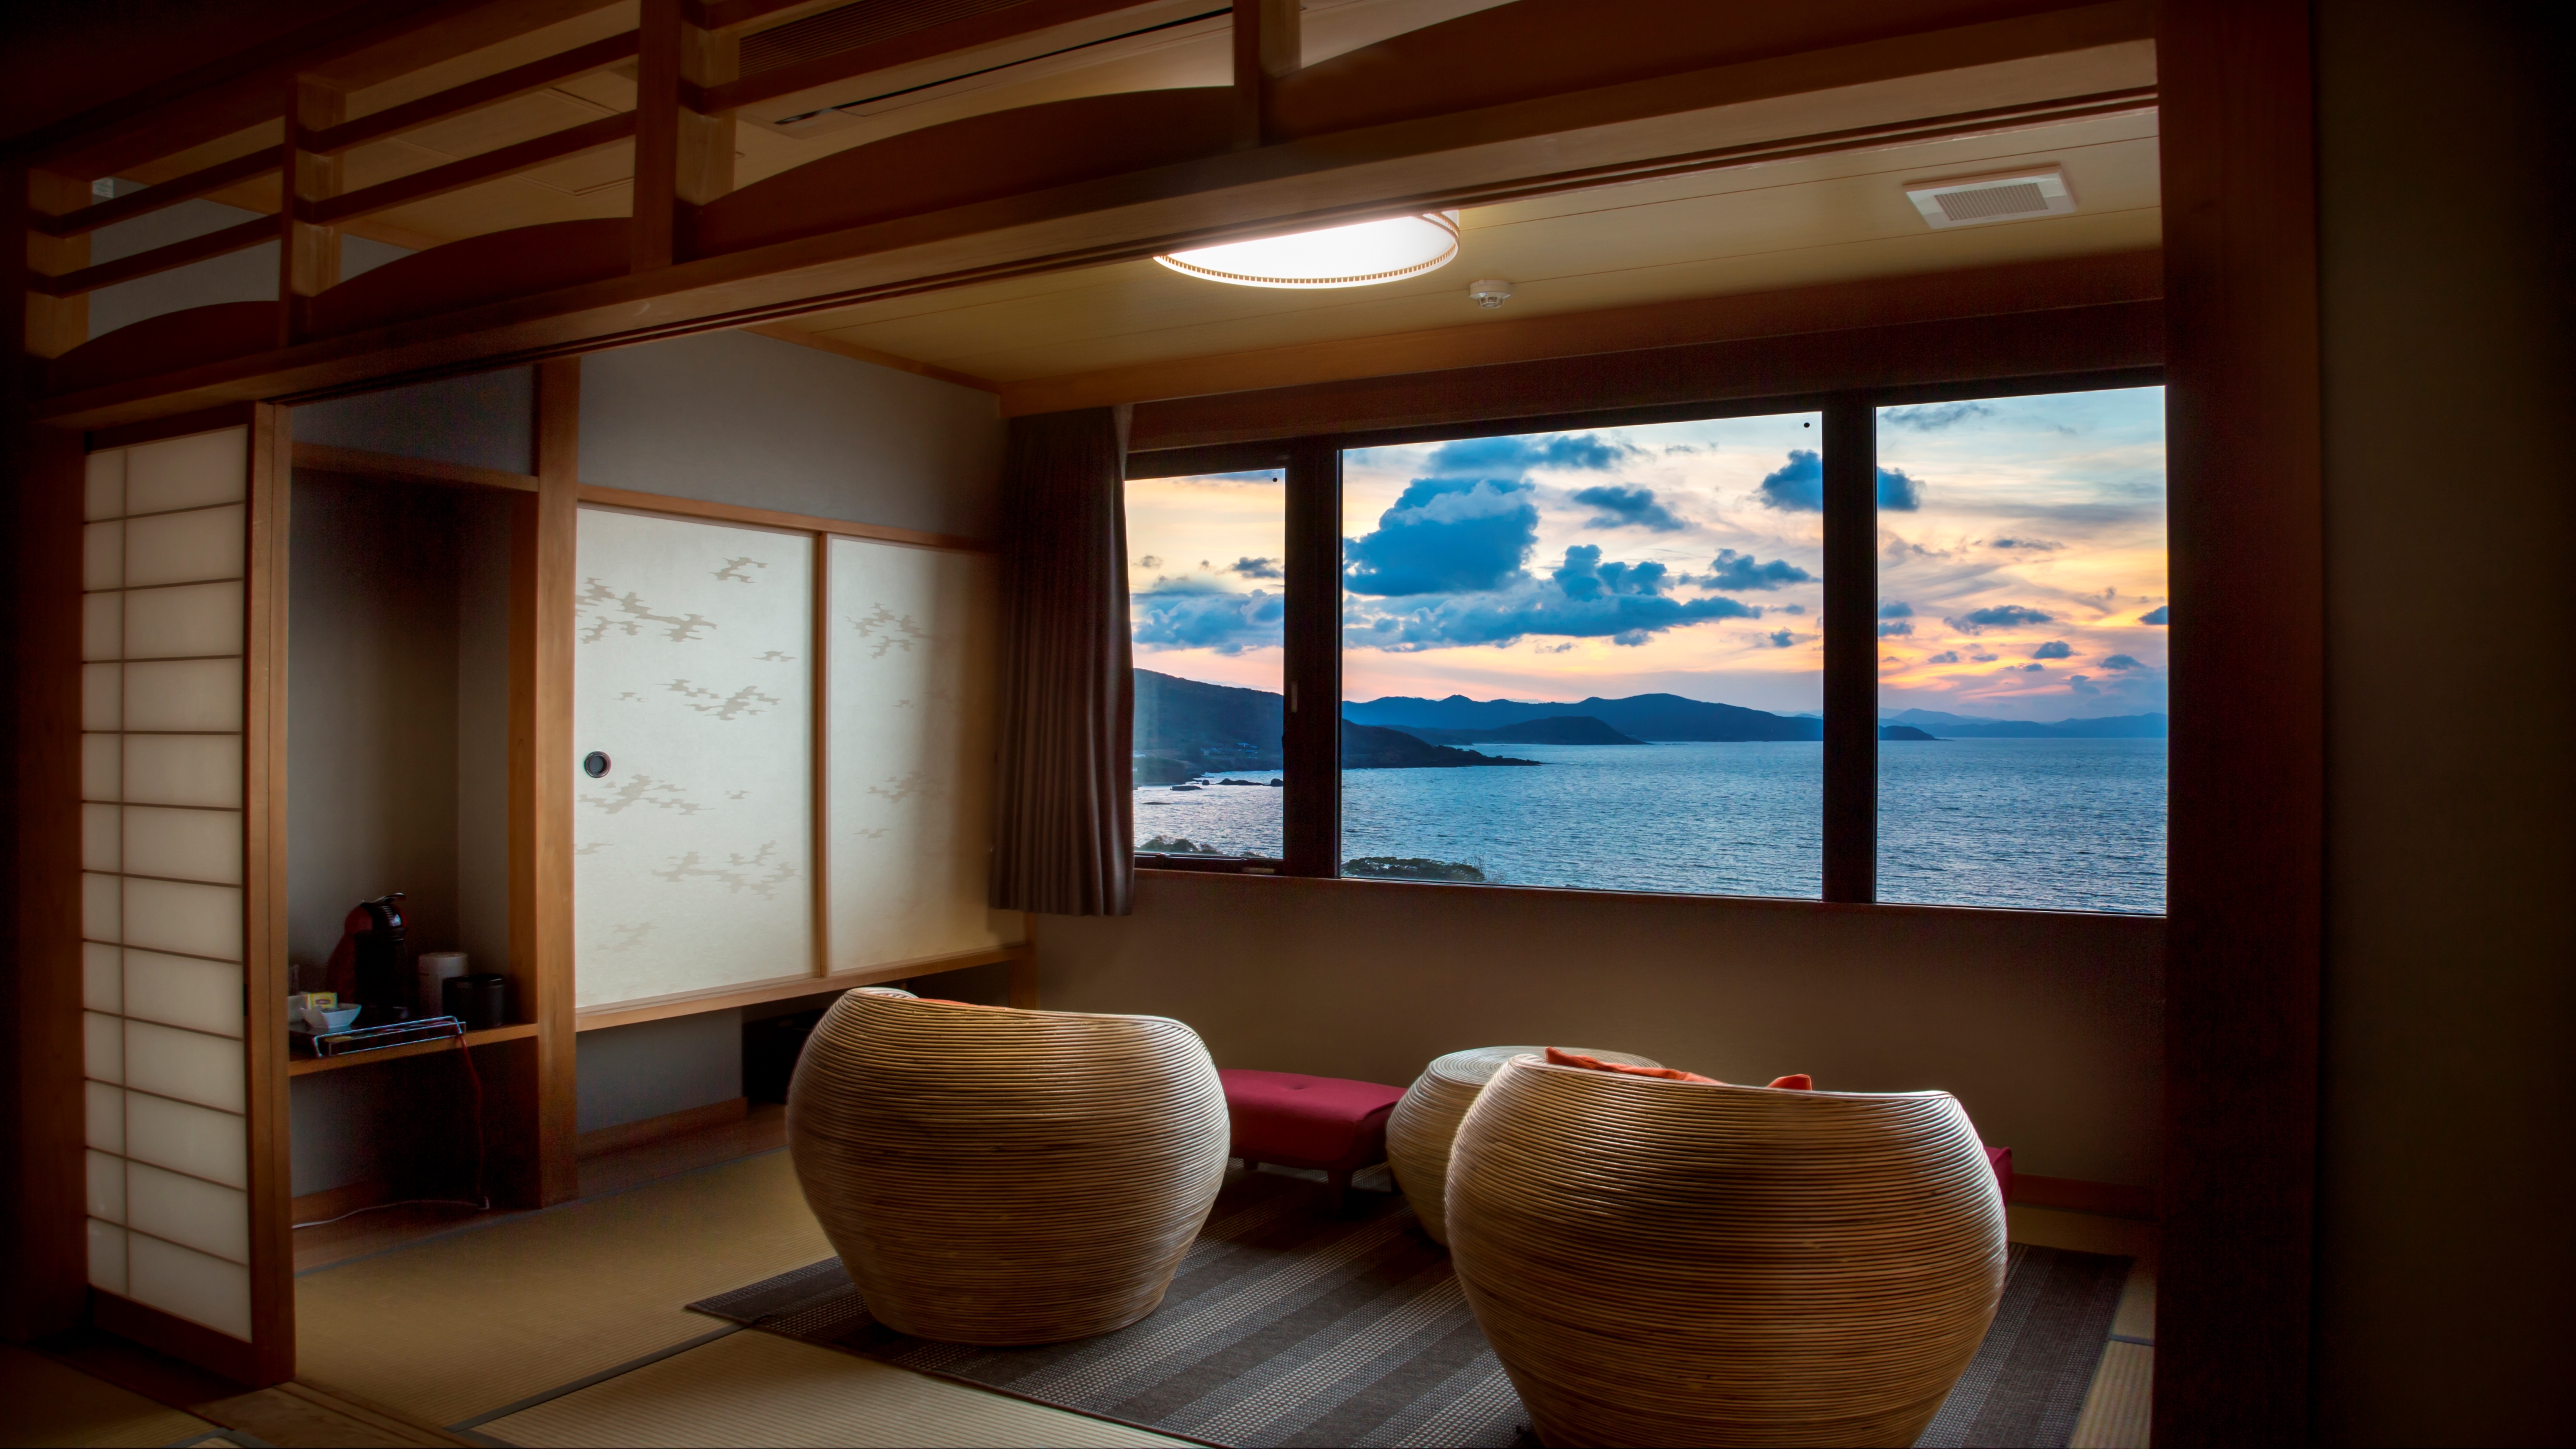 【最上階特別室「天空」】最上階・特別室から一望する雄大な日本海絶景で心癒されて。